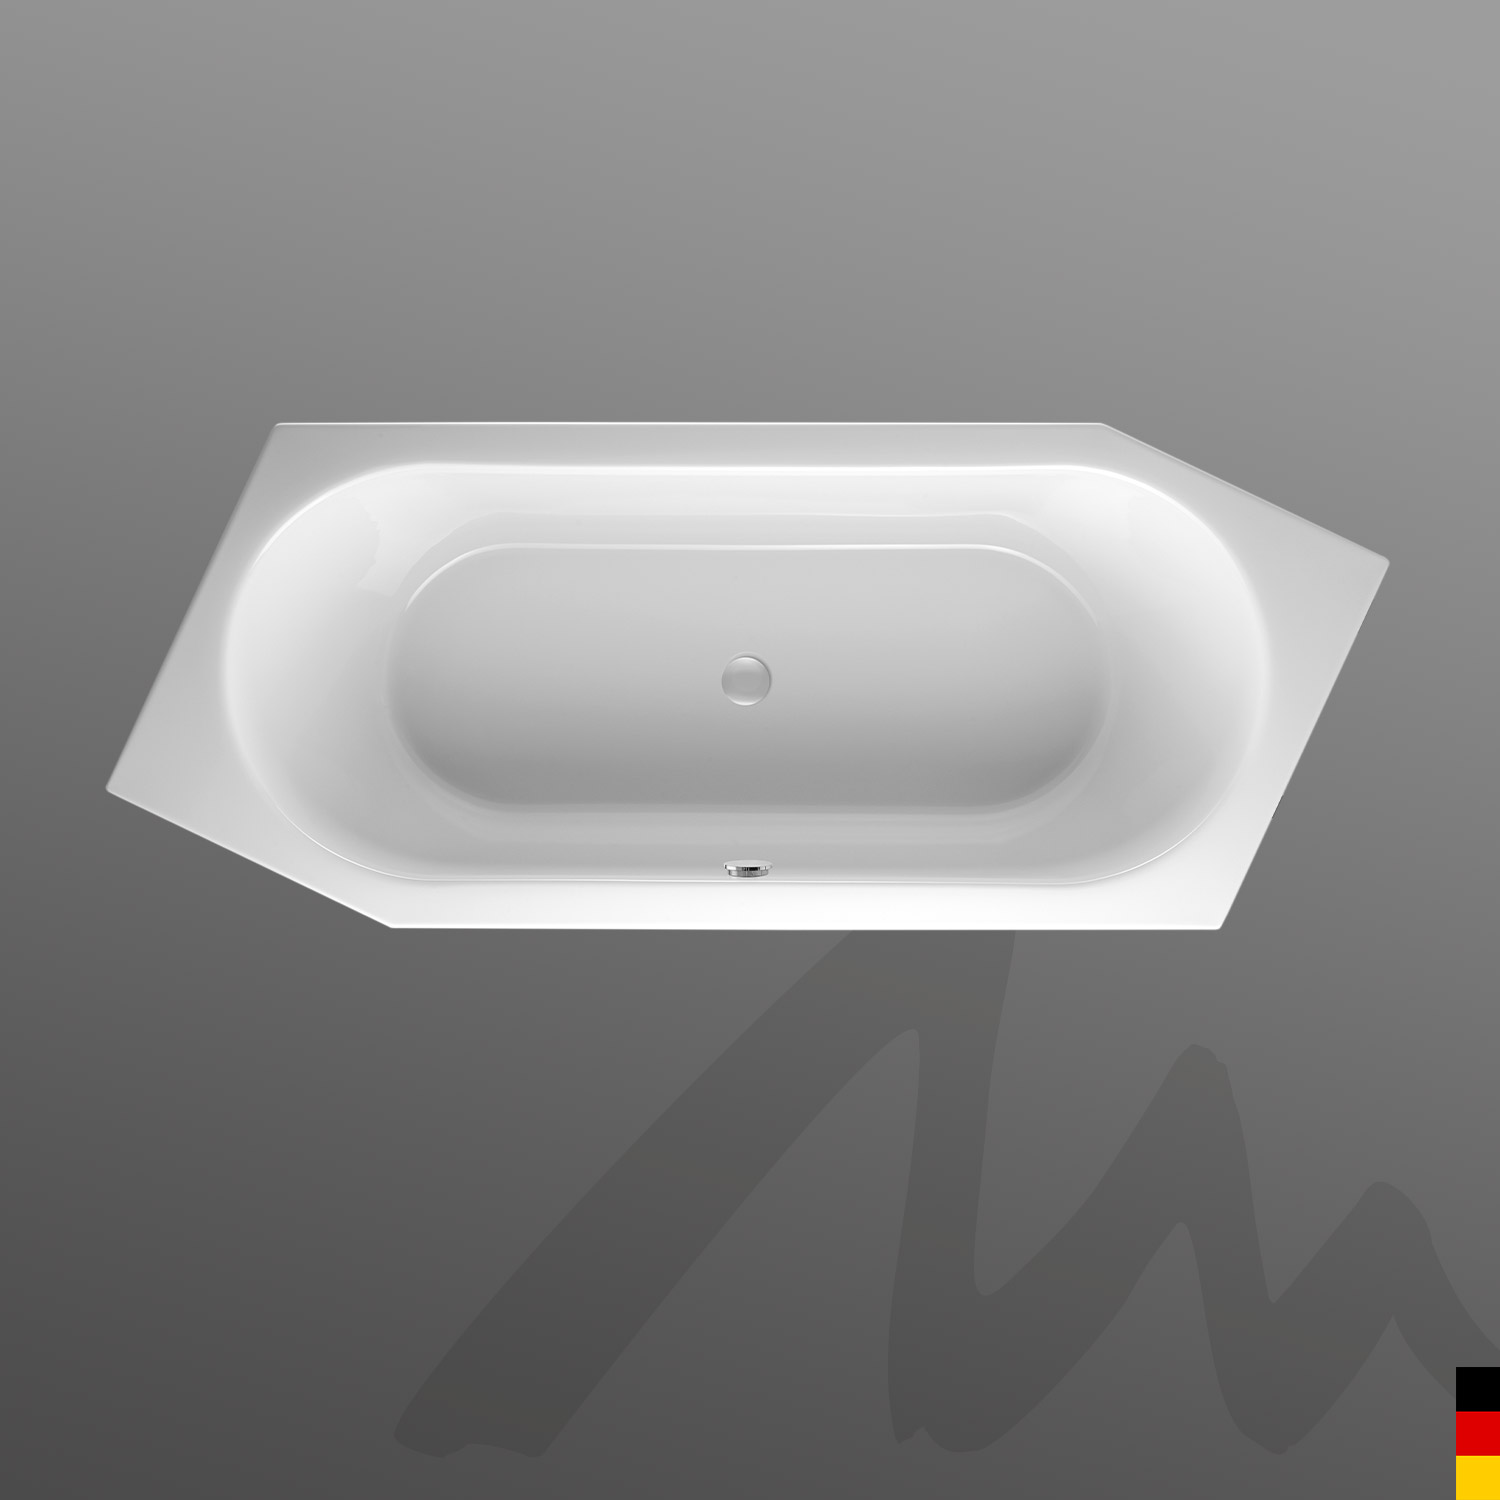 Mauersberger Badewanne 6-Eck Ovata 210/90  210x90x45cm  Farbe:rein-weiß